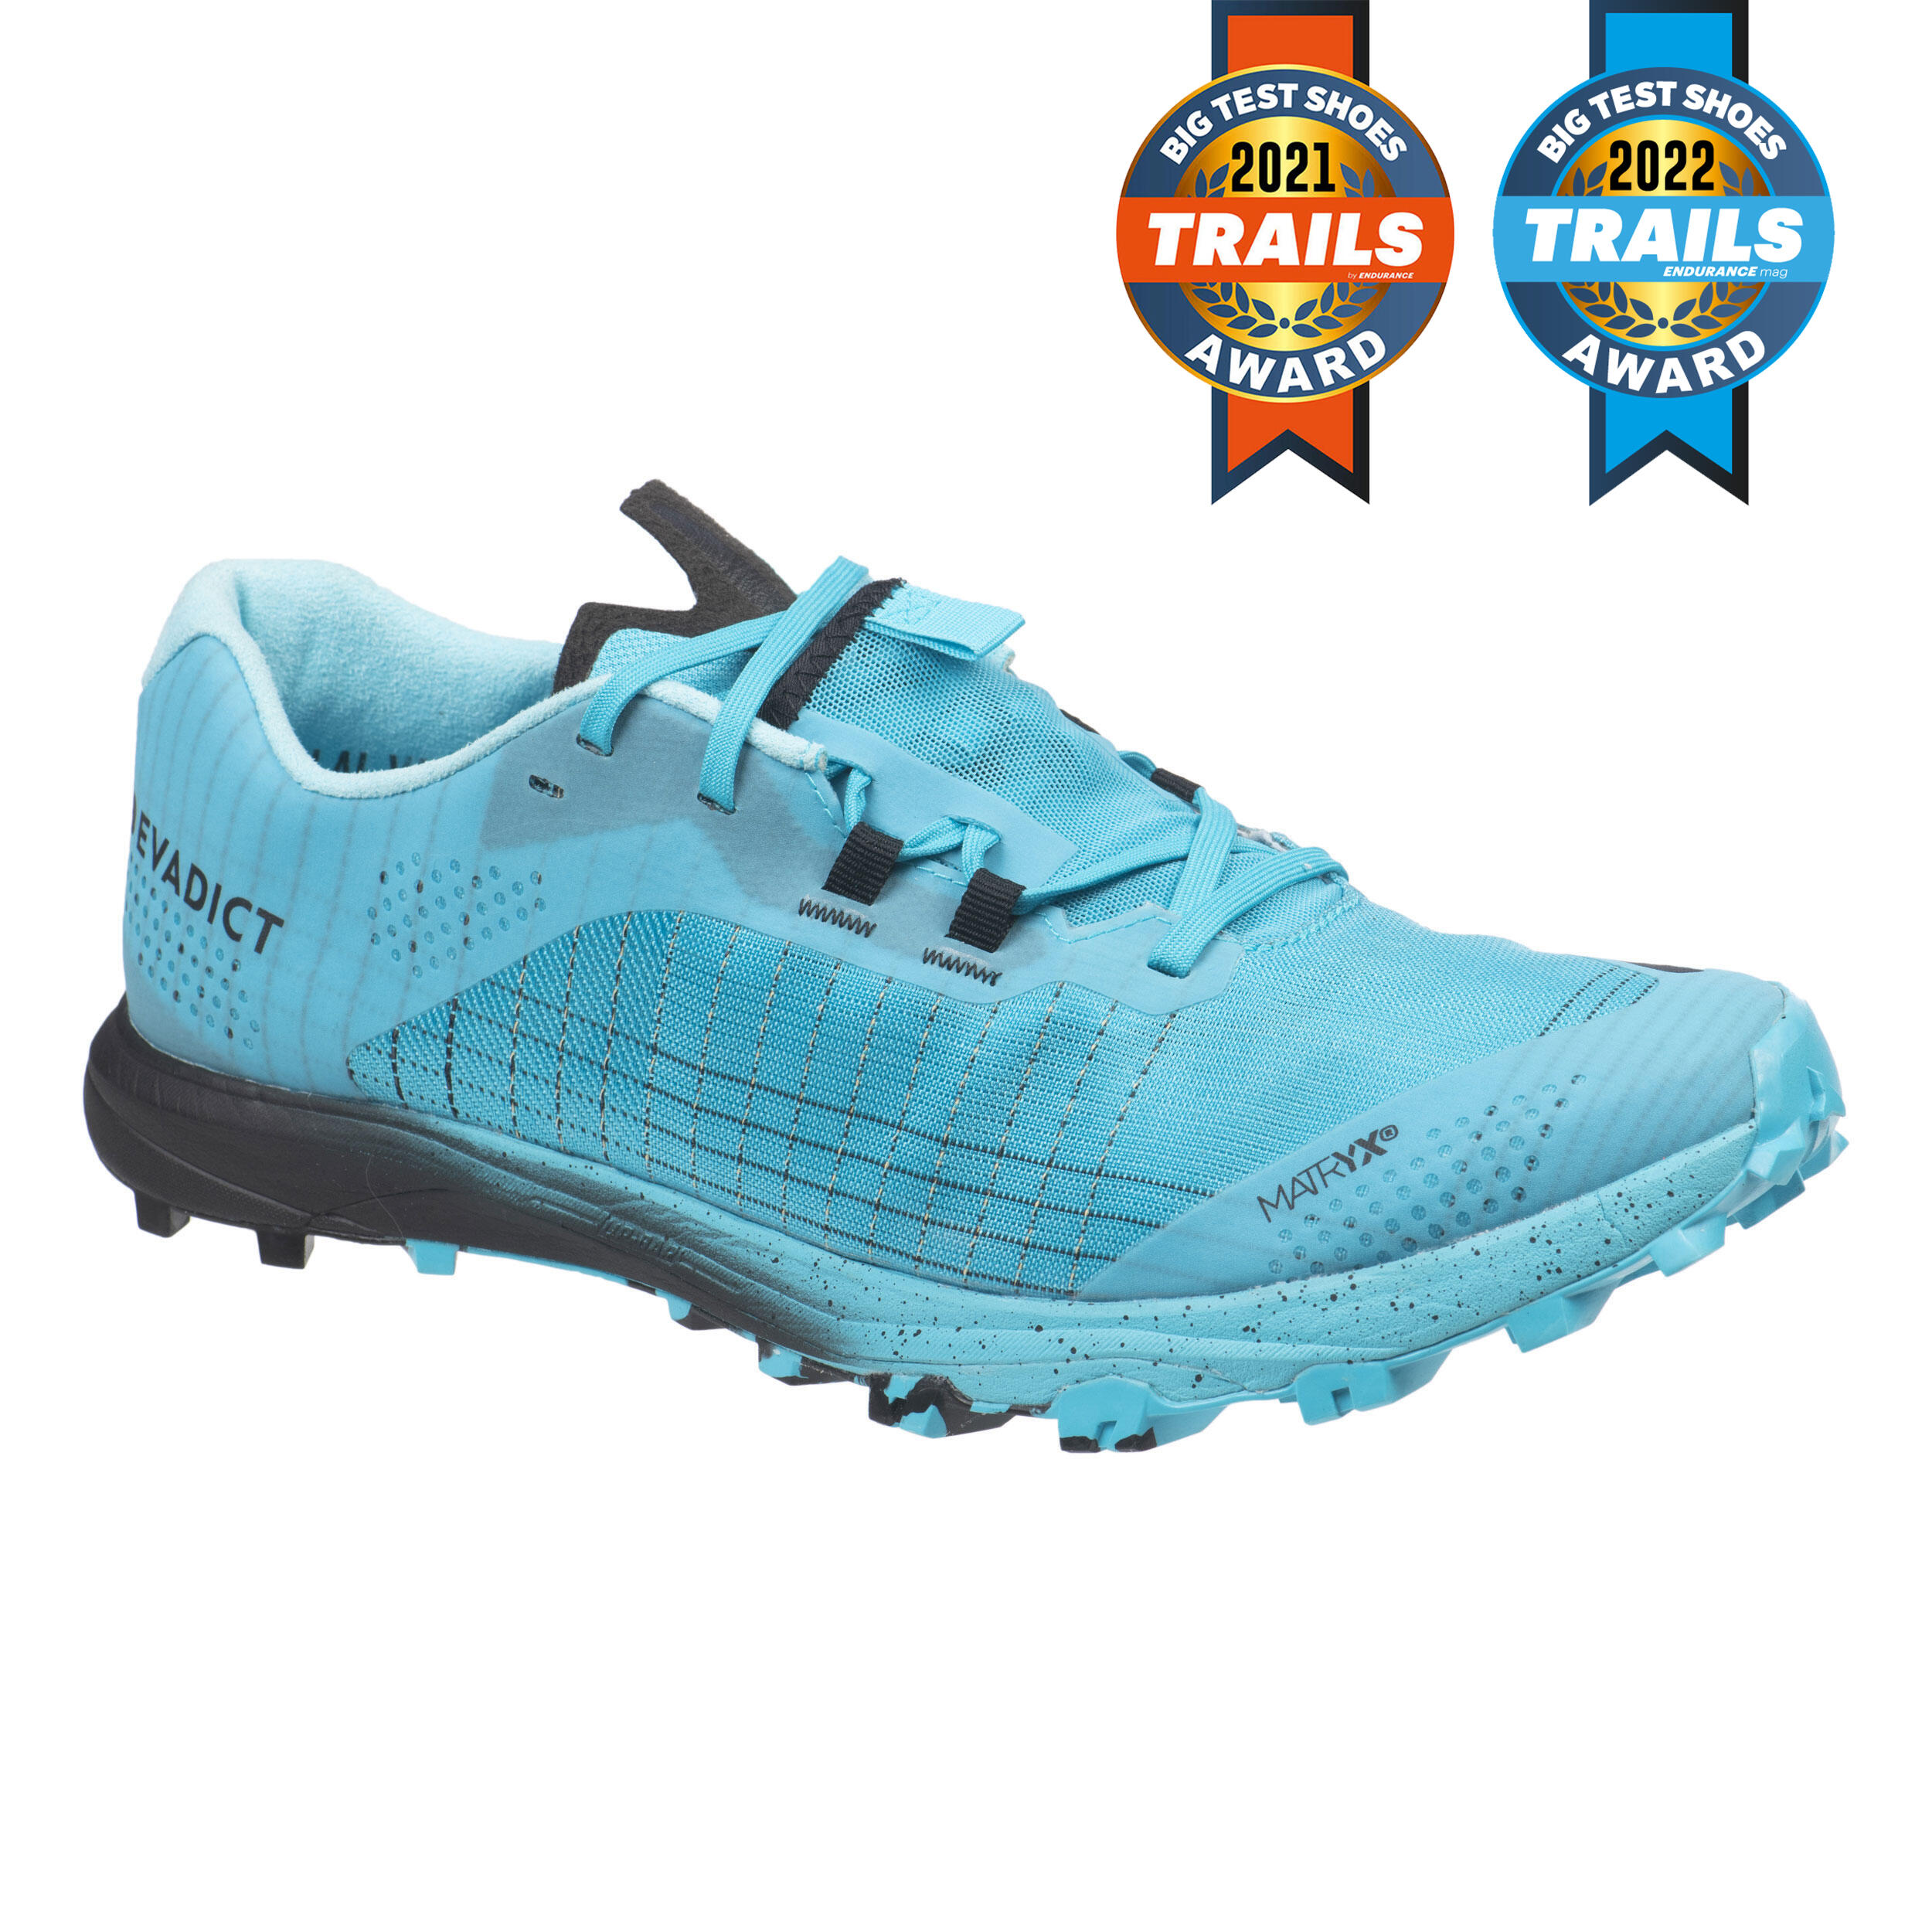 Încălţăminte Alergare Trail Running Race Light Albastru-Negru Bărbați La Oferta Online decathlon imagine La Oferta Online